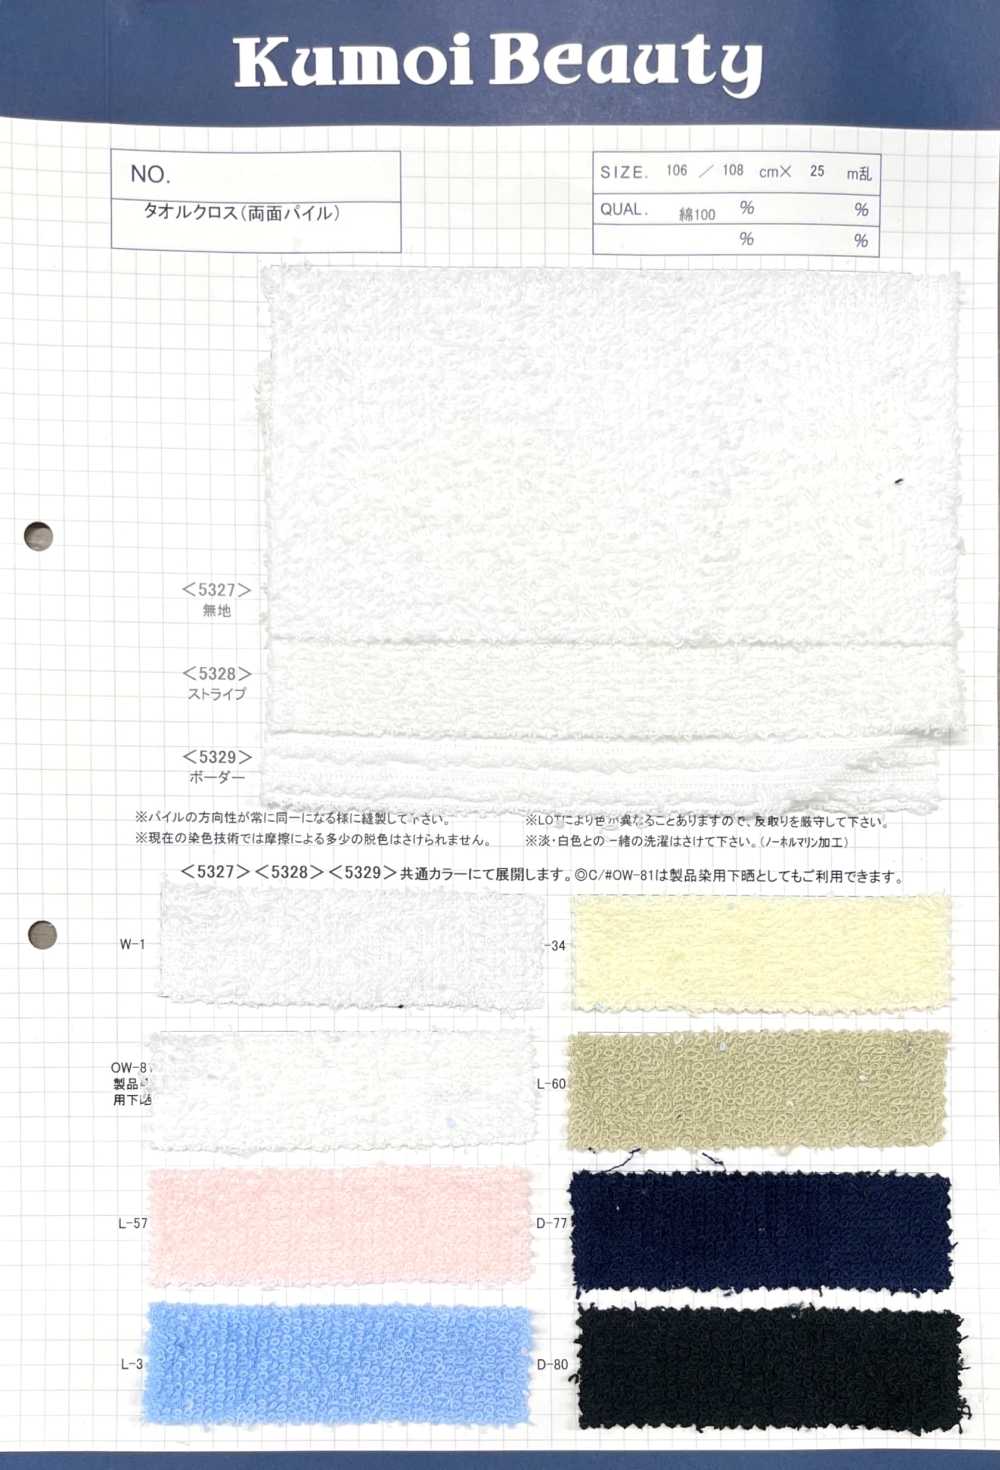 5329 Serviette En Coton (Pile Double Face) Rayures Horizontales[Fabrication De Textile] Kumoi Beauty (Chubu Velours Côtelé)